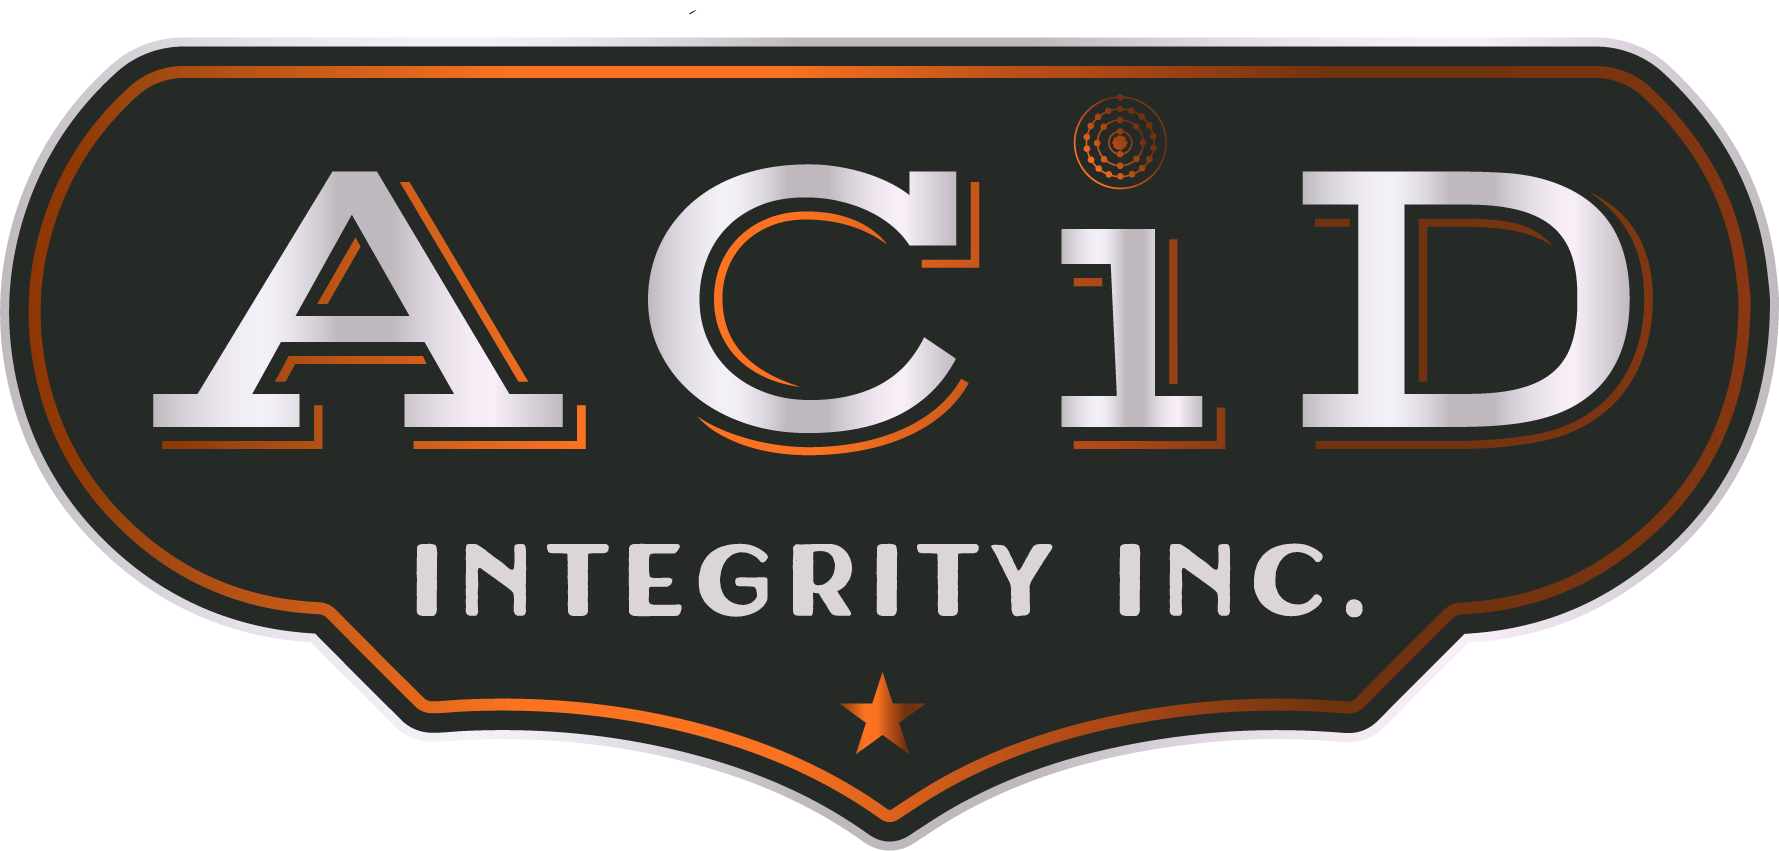 ACiD Integrity